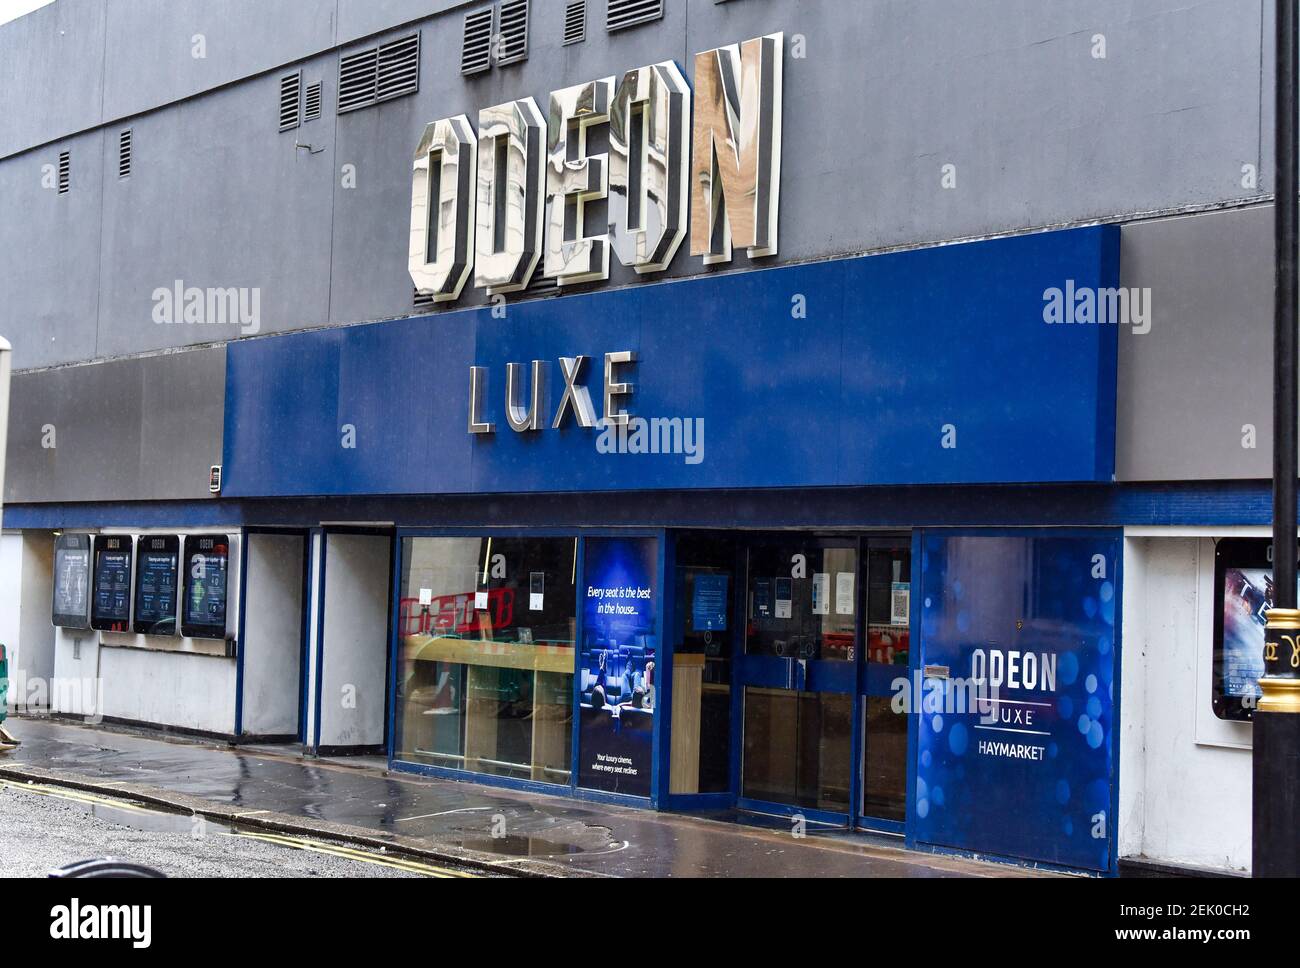 Das Odeon Luxe im Londoner Haymarket wurde wegen der Sperre von Covid19 geschlossen. Kinos werden voraussichtlich ab dem 17th. Mai wiedereröffnet, da der britische Premierminister Boris Johnson seinen Fahrplan aus der Lockdown für England ankündigt. Stockfoto